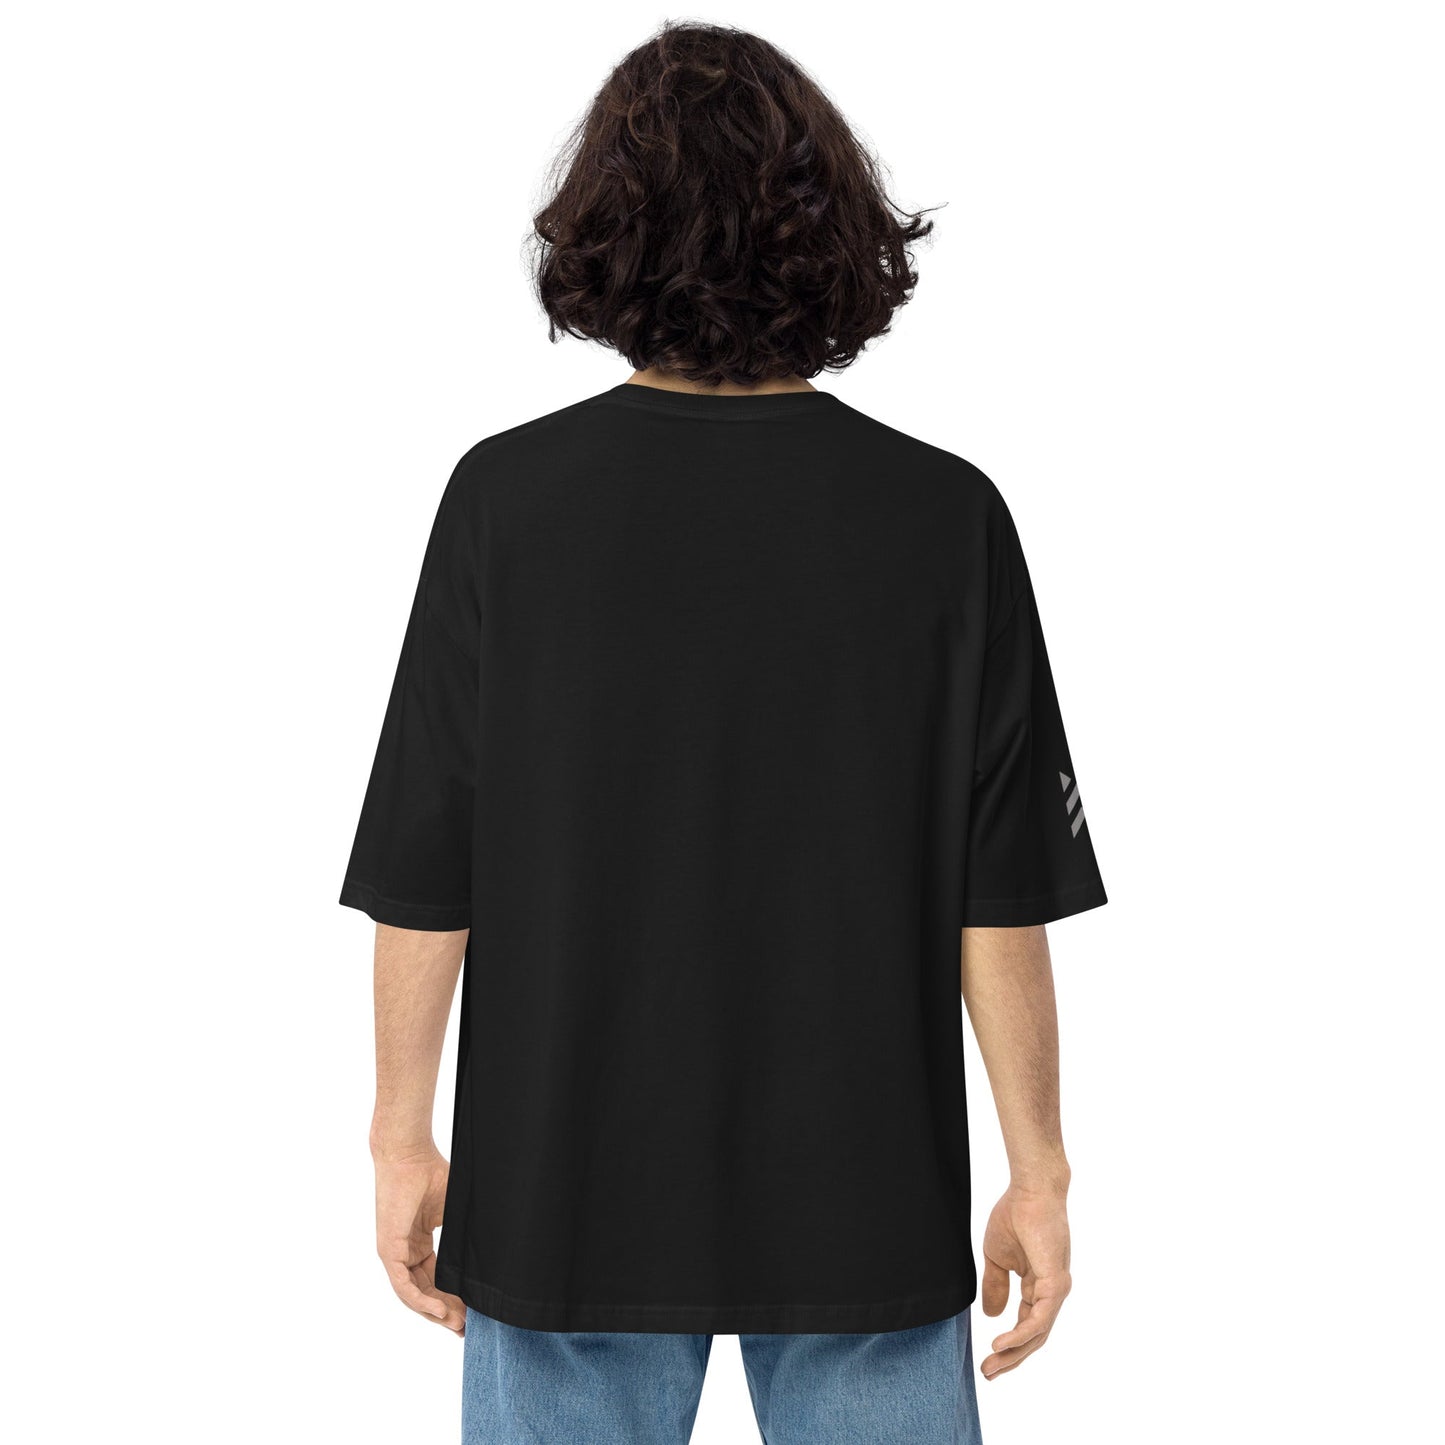 BlackMars oversized t-shirt - Premium  from BlackMars  - Just £28.50! Shop now at BlackMars 28.50BlackMars 